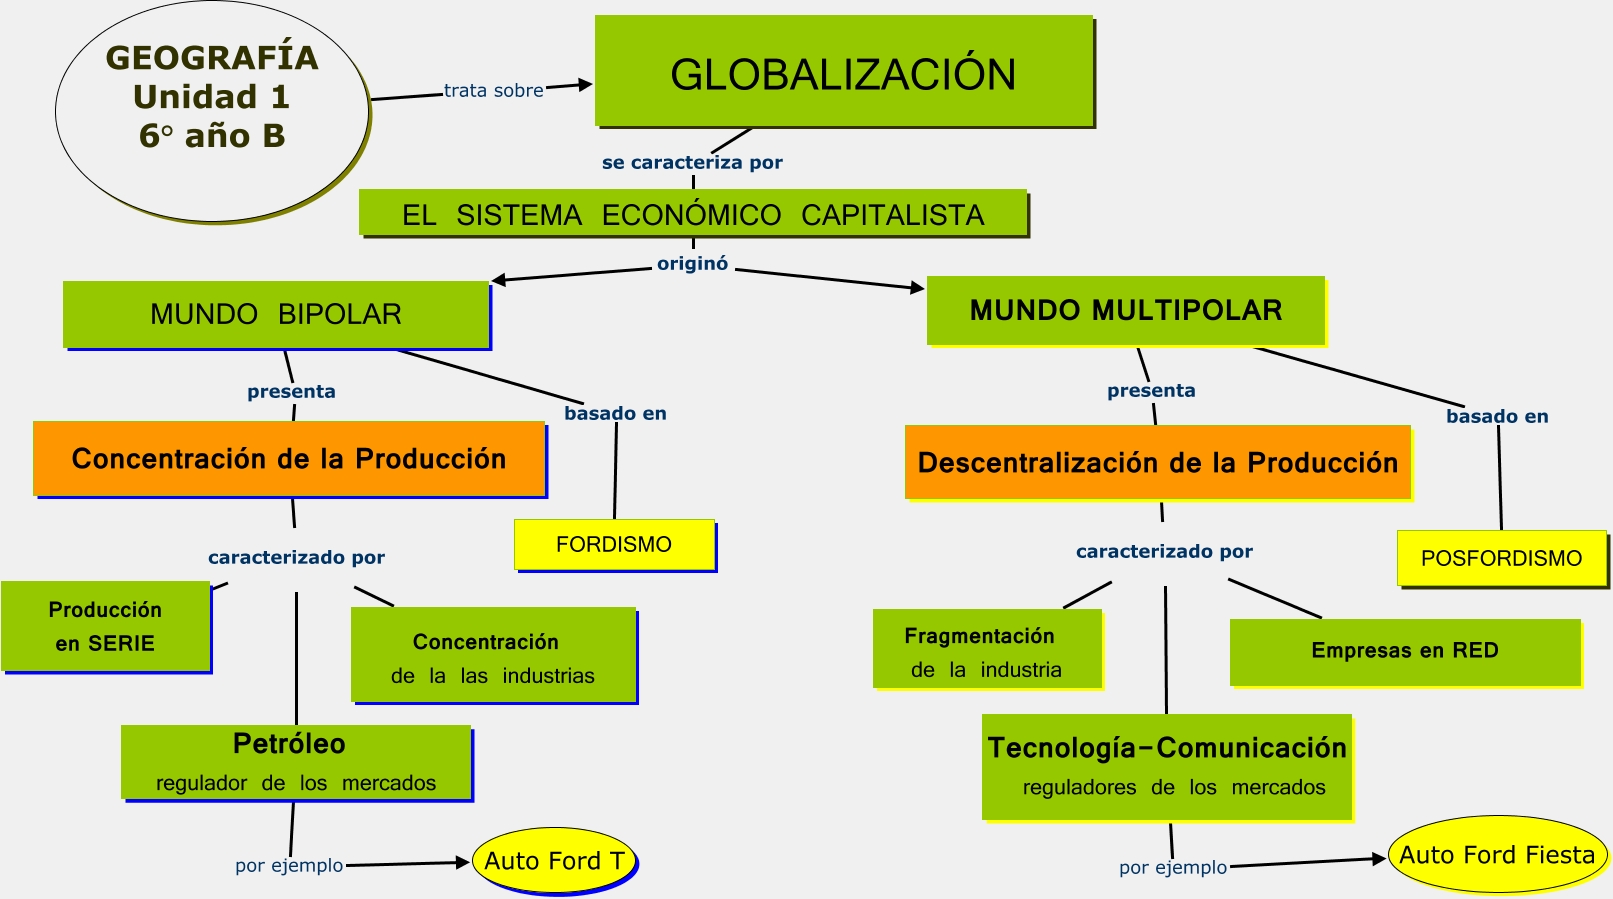 U-1 GLOBALIZACIÓN - SISTEMAS ECONOMICOS